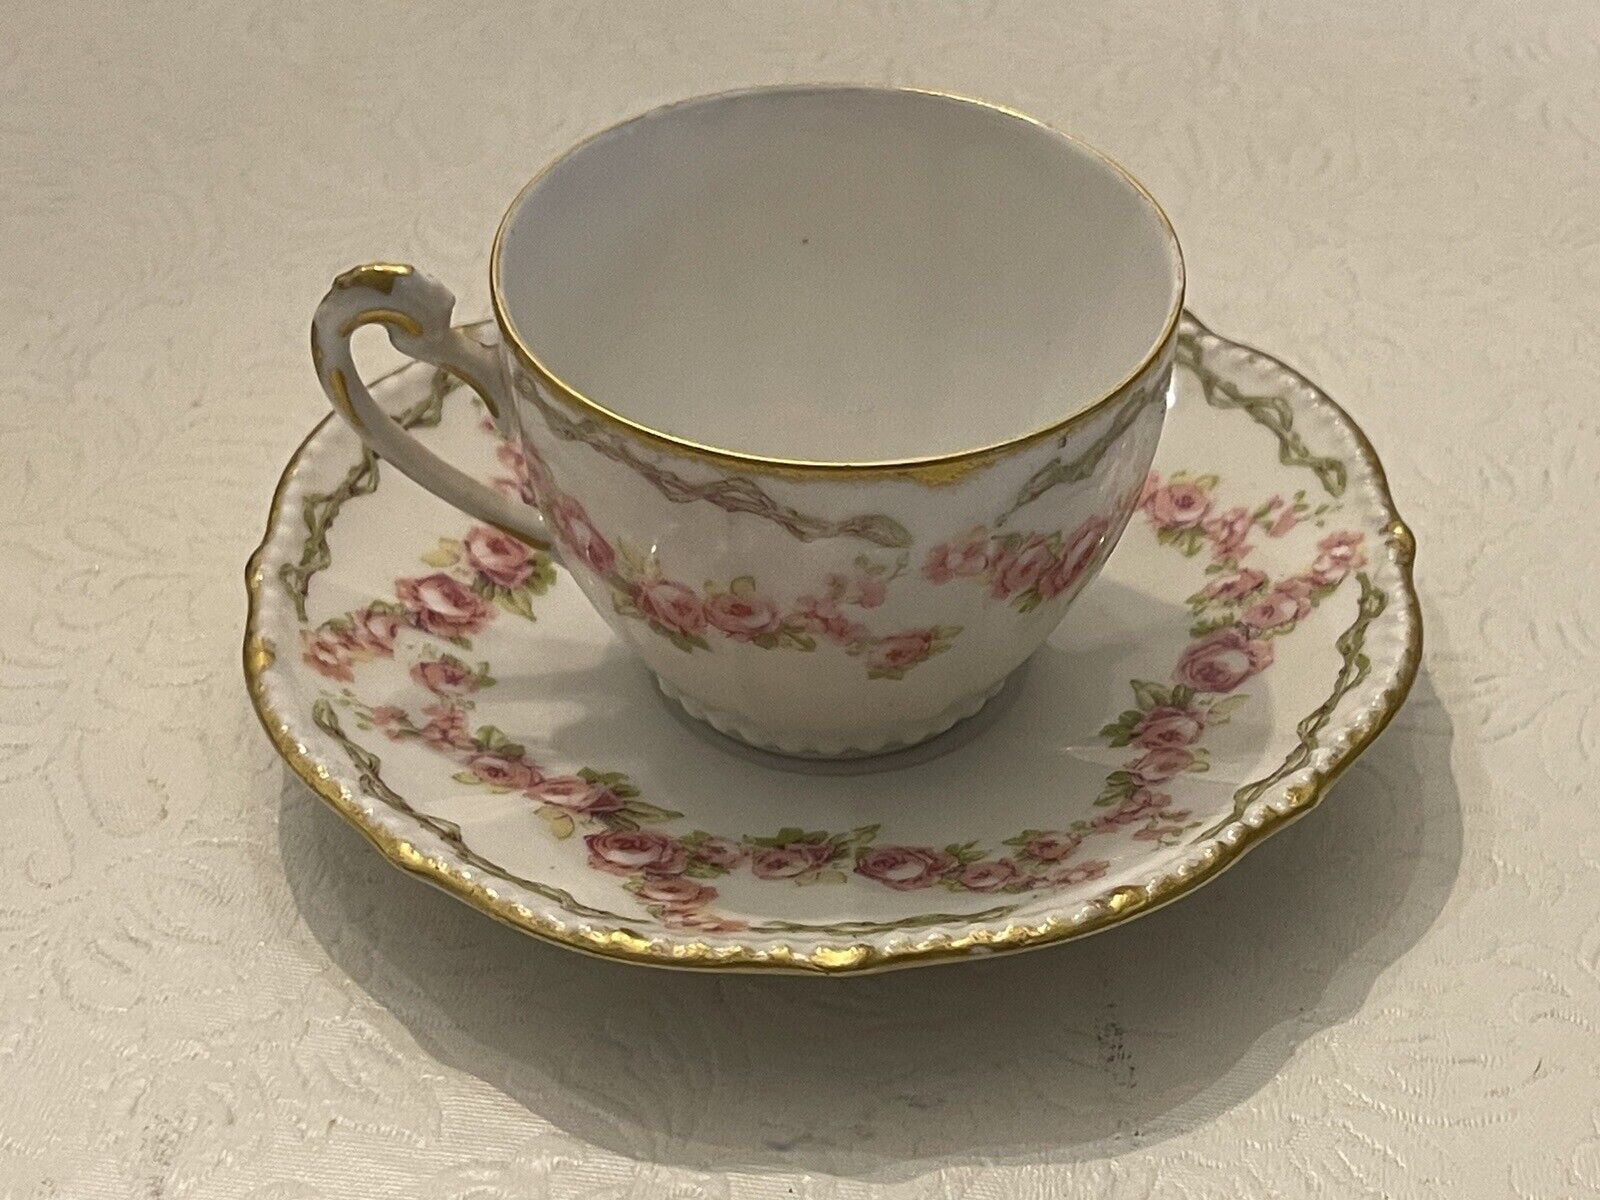 Elite Limoges France Demitasse Teacup Saucer Pink Roses Gilt Tea Cup Porcelain